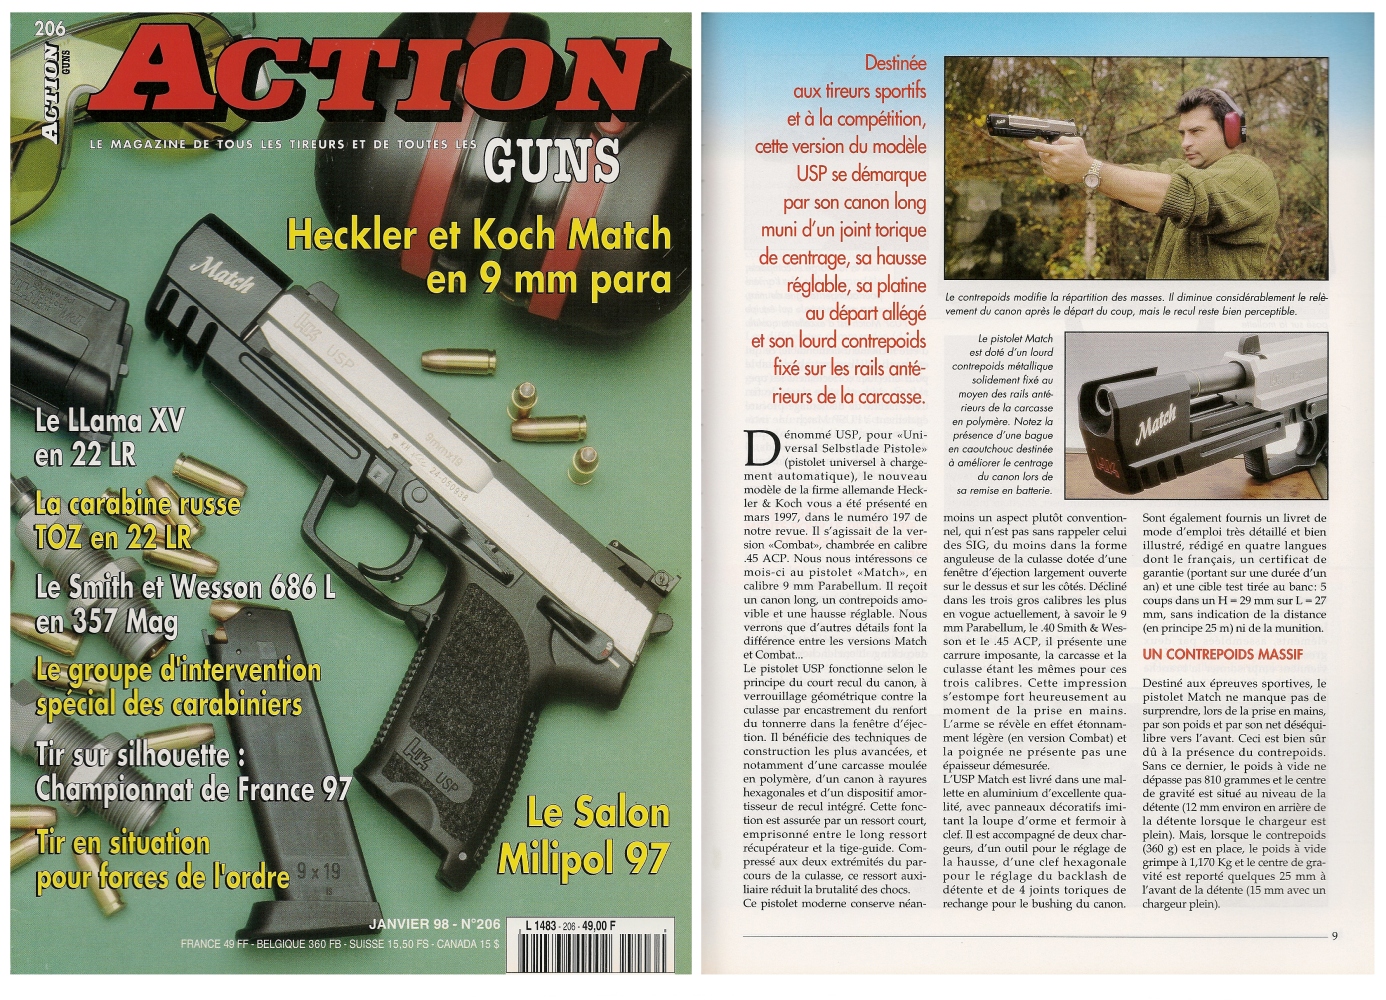 Le banc d'essai du pistolet HK USP Match a été publié sur 6 pages dans le magazine Action Guns n° 206 (janvier 1998).